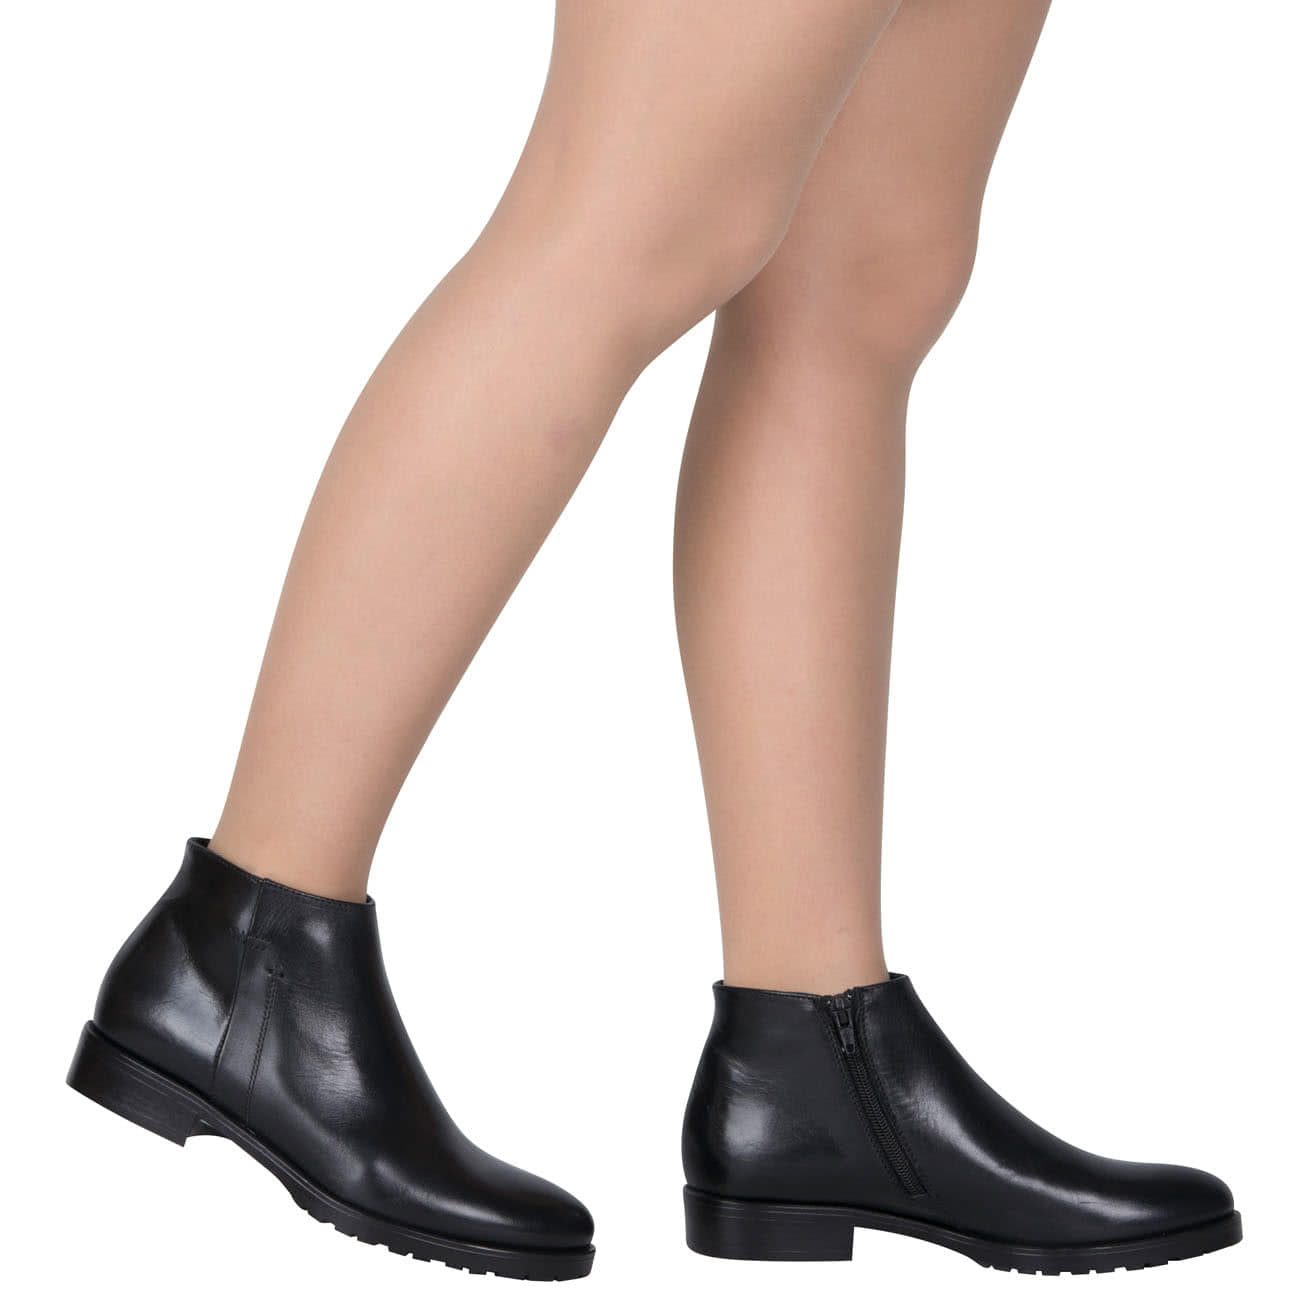 Стильные кожаные женские полусапоги без каблука в интернет магазине Kwinto